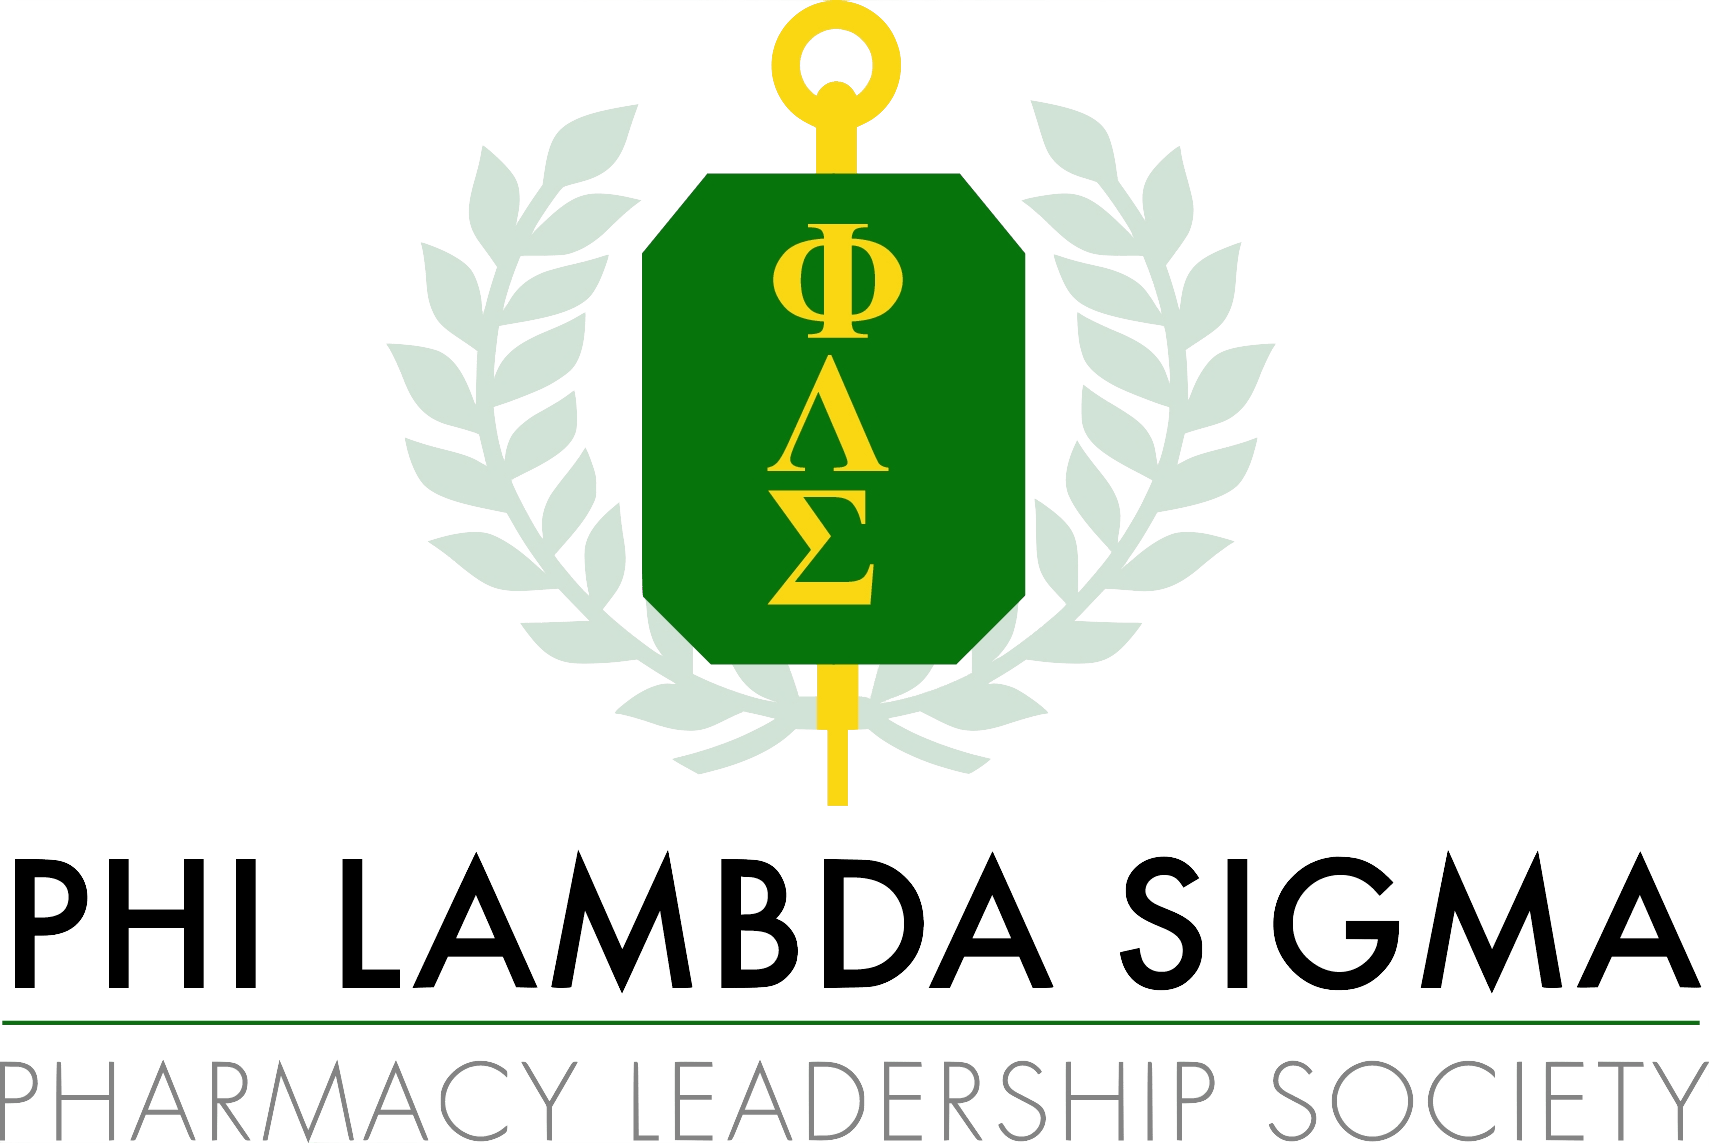 Phi Lambda Sigma Pharmacy Leadership Society